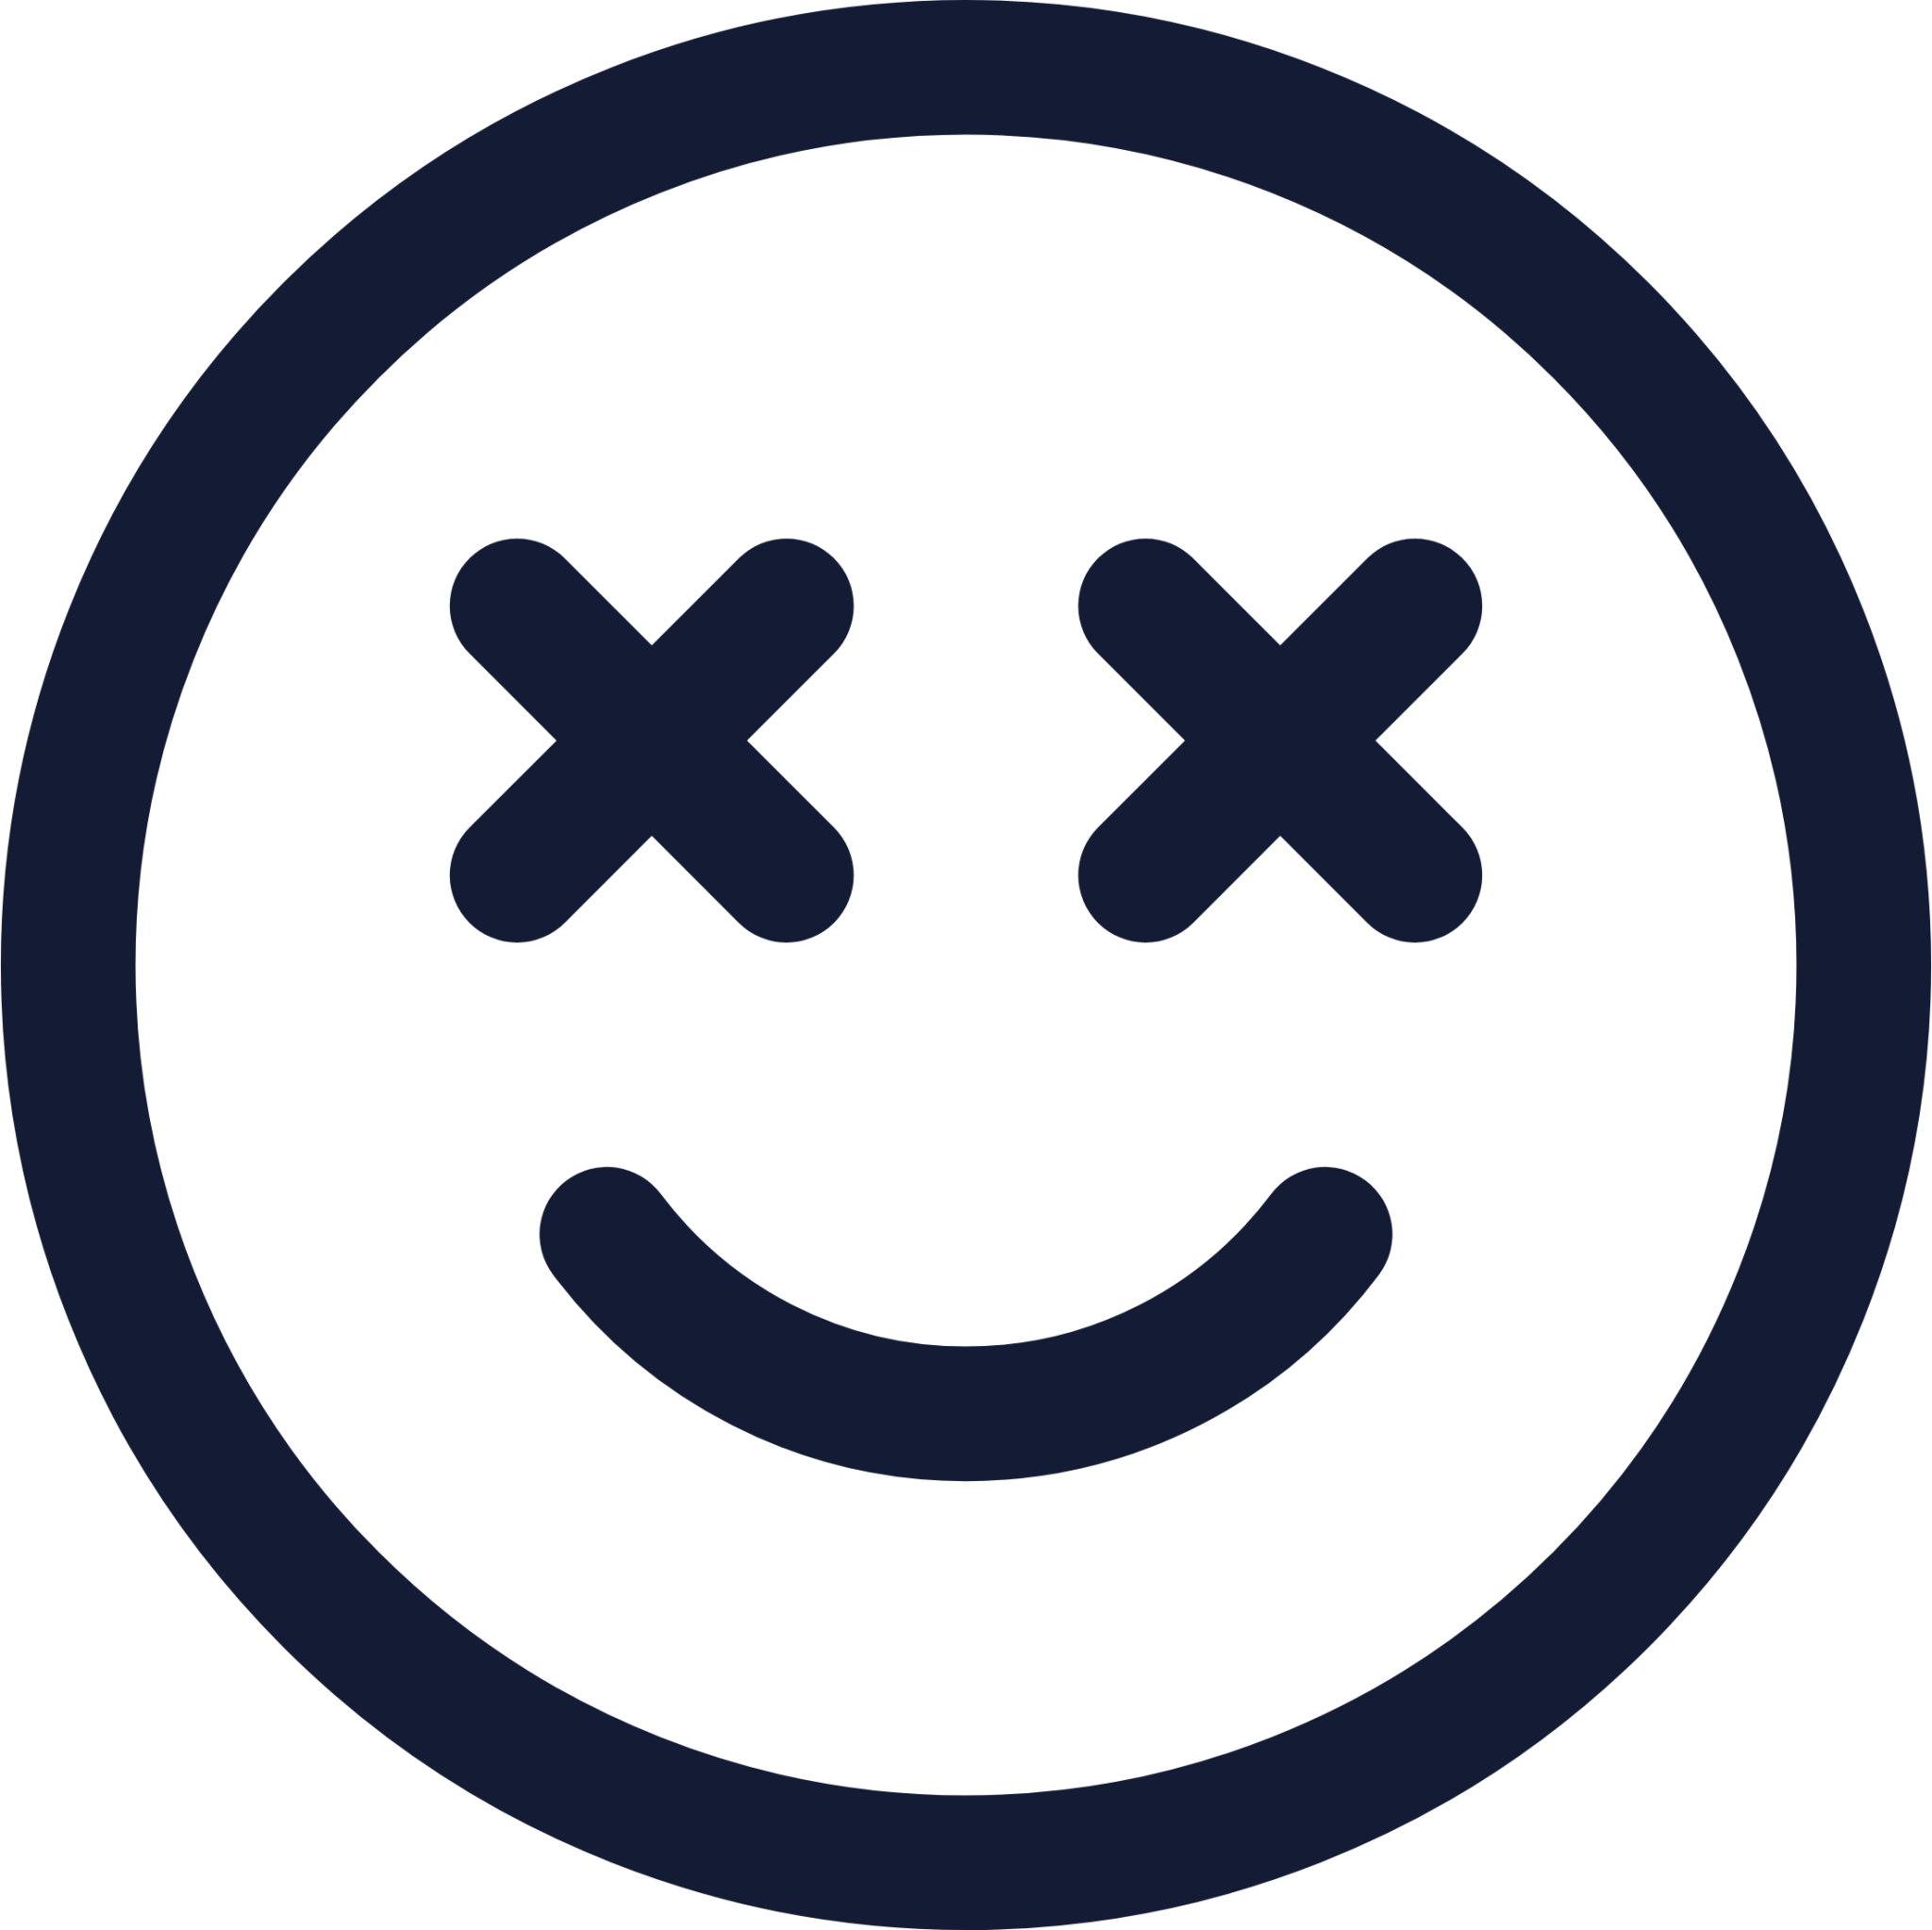 smile dizzy icon